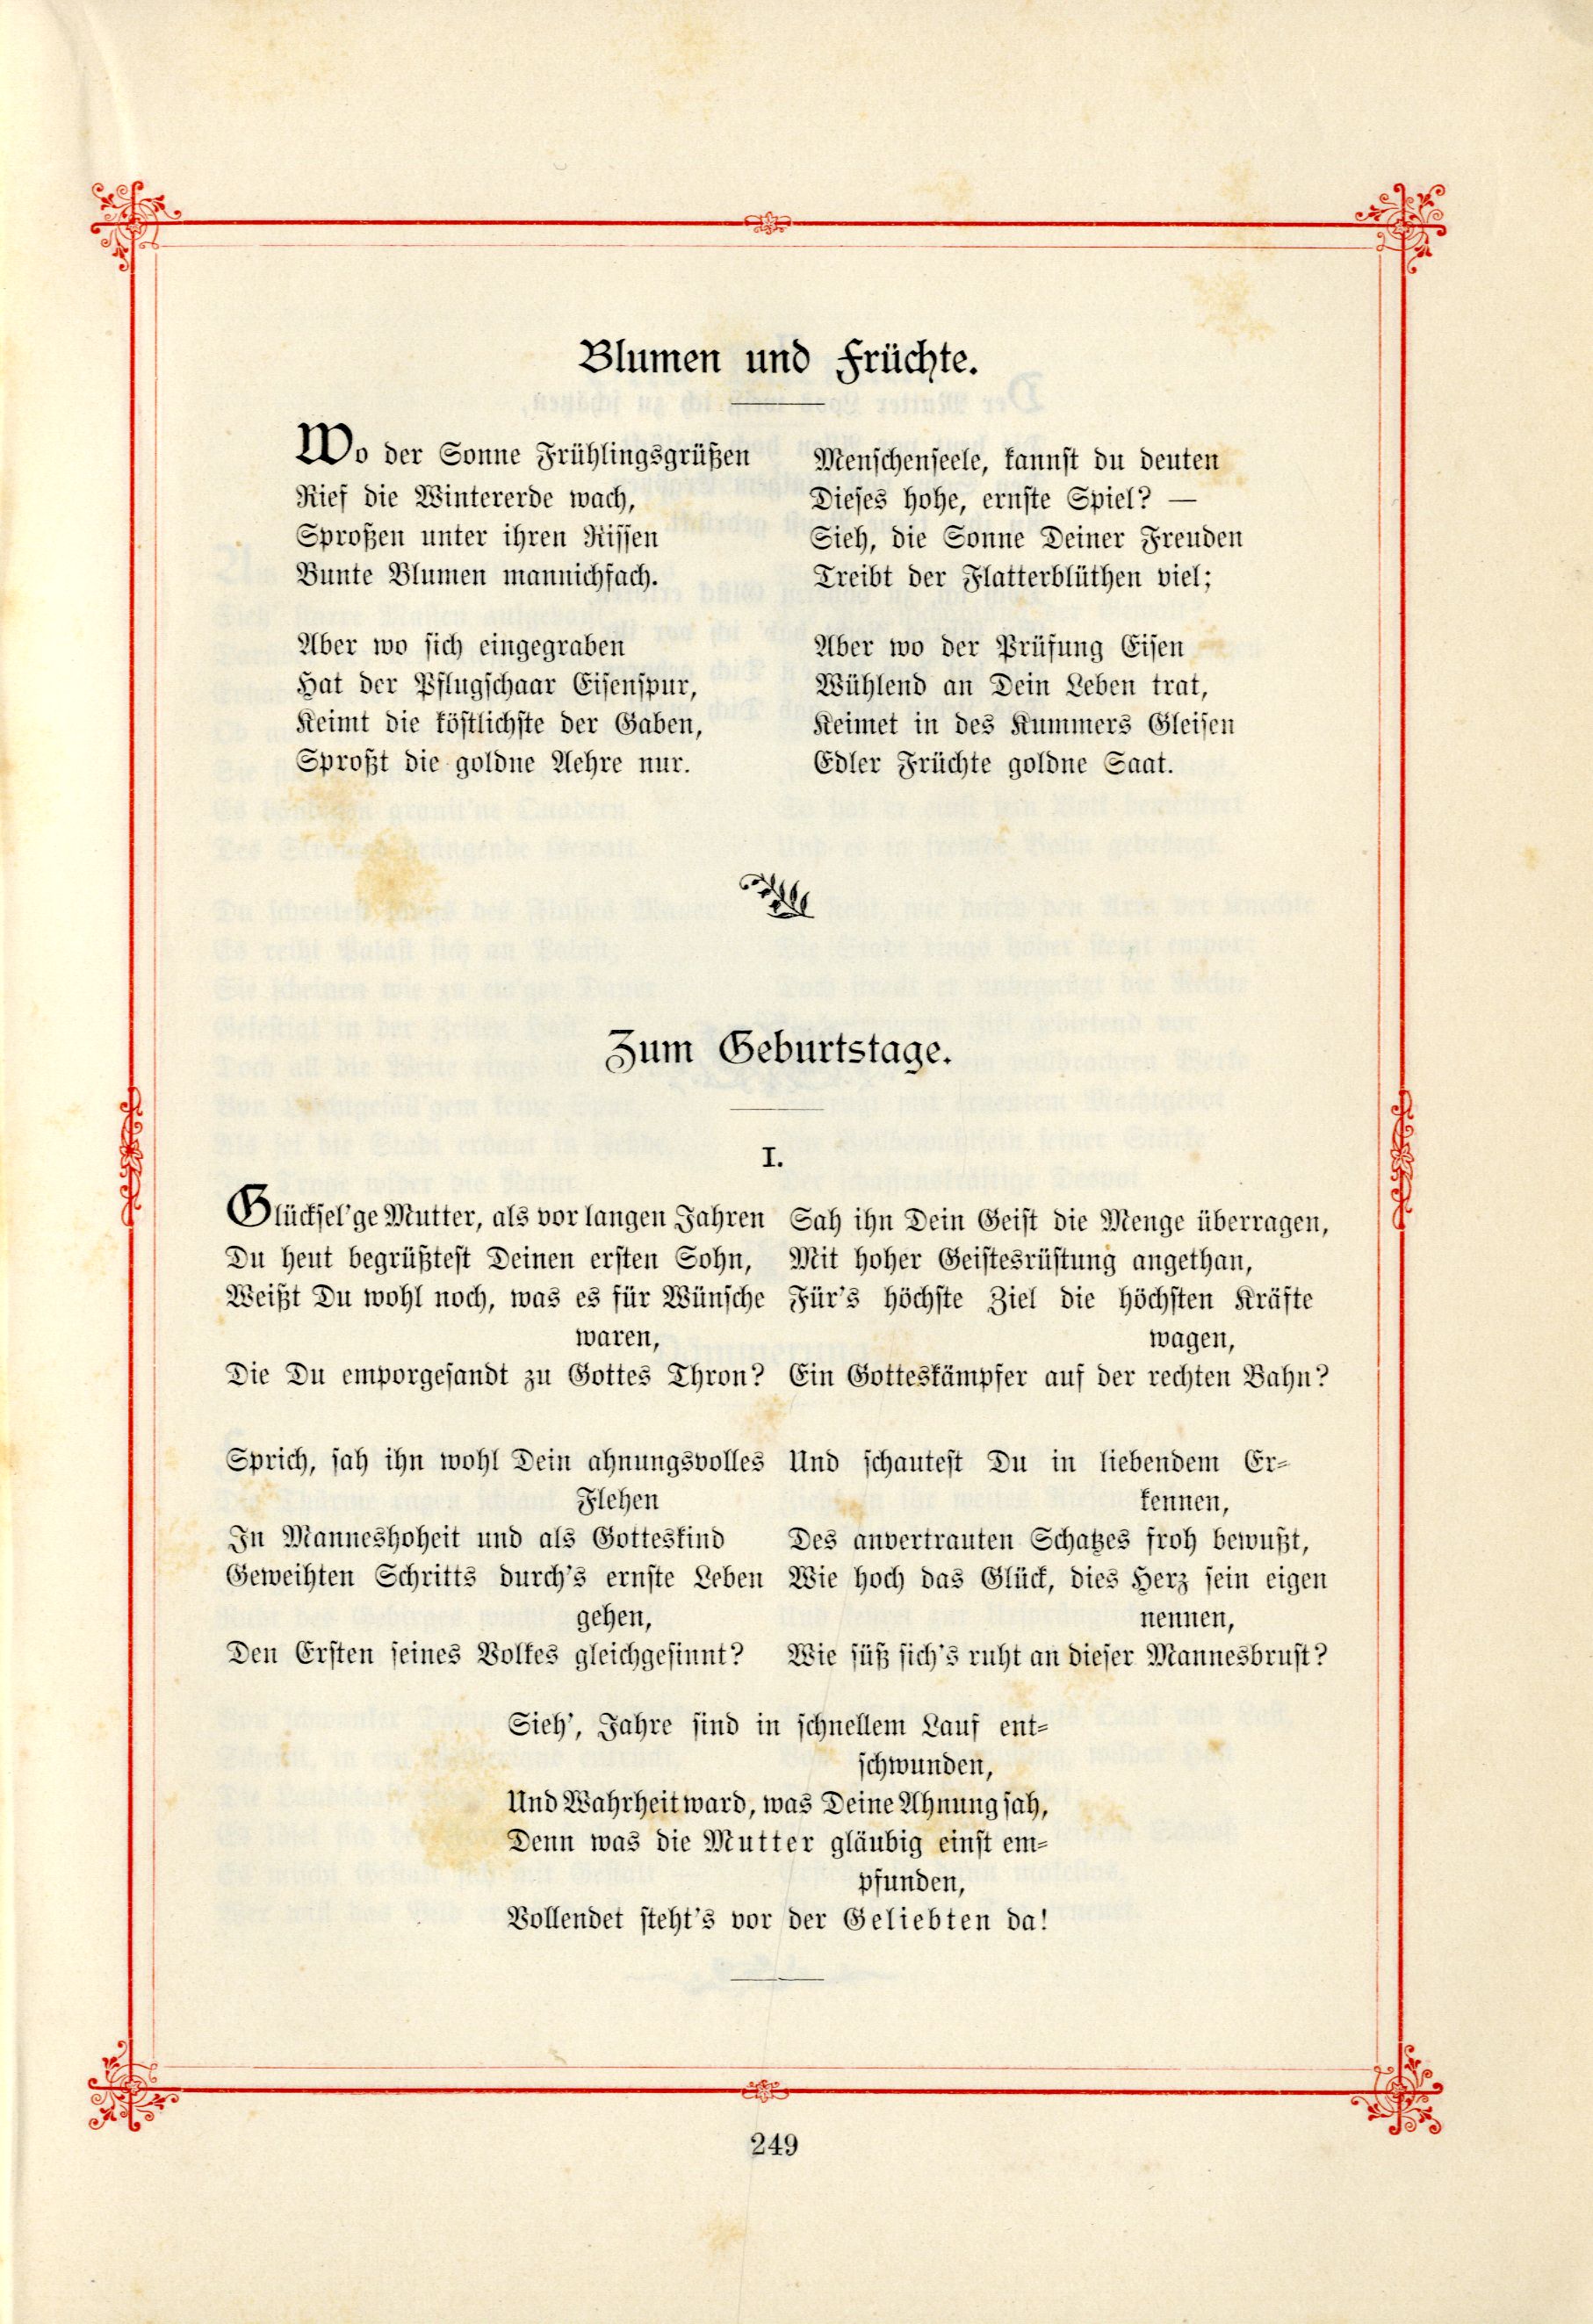 Zum Geburtstage (1895) | 1. (249) Main body of text